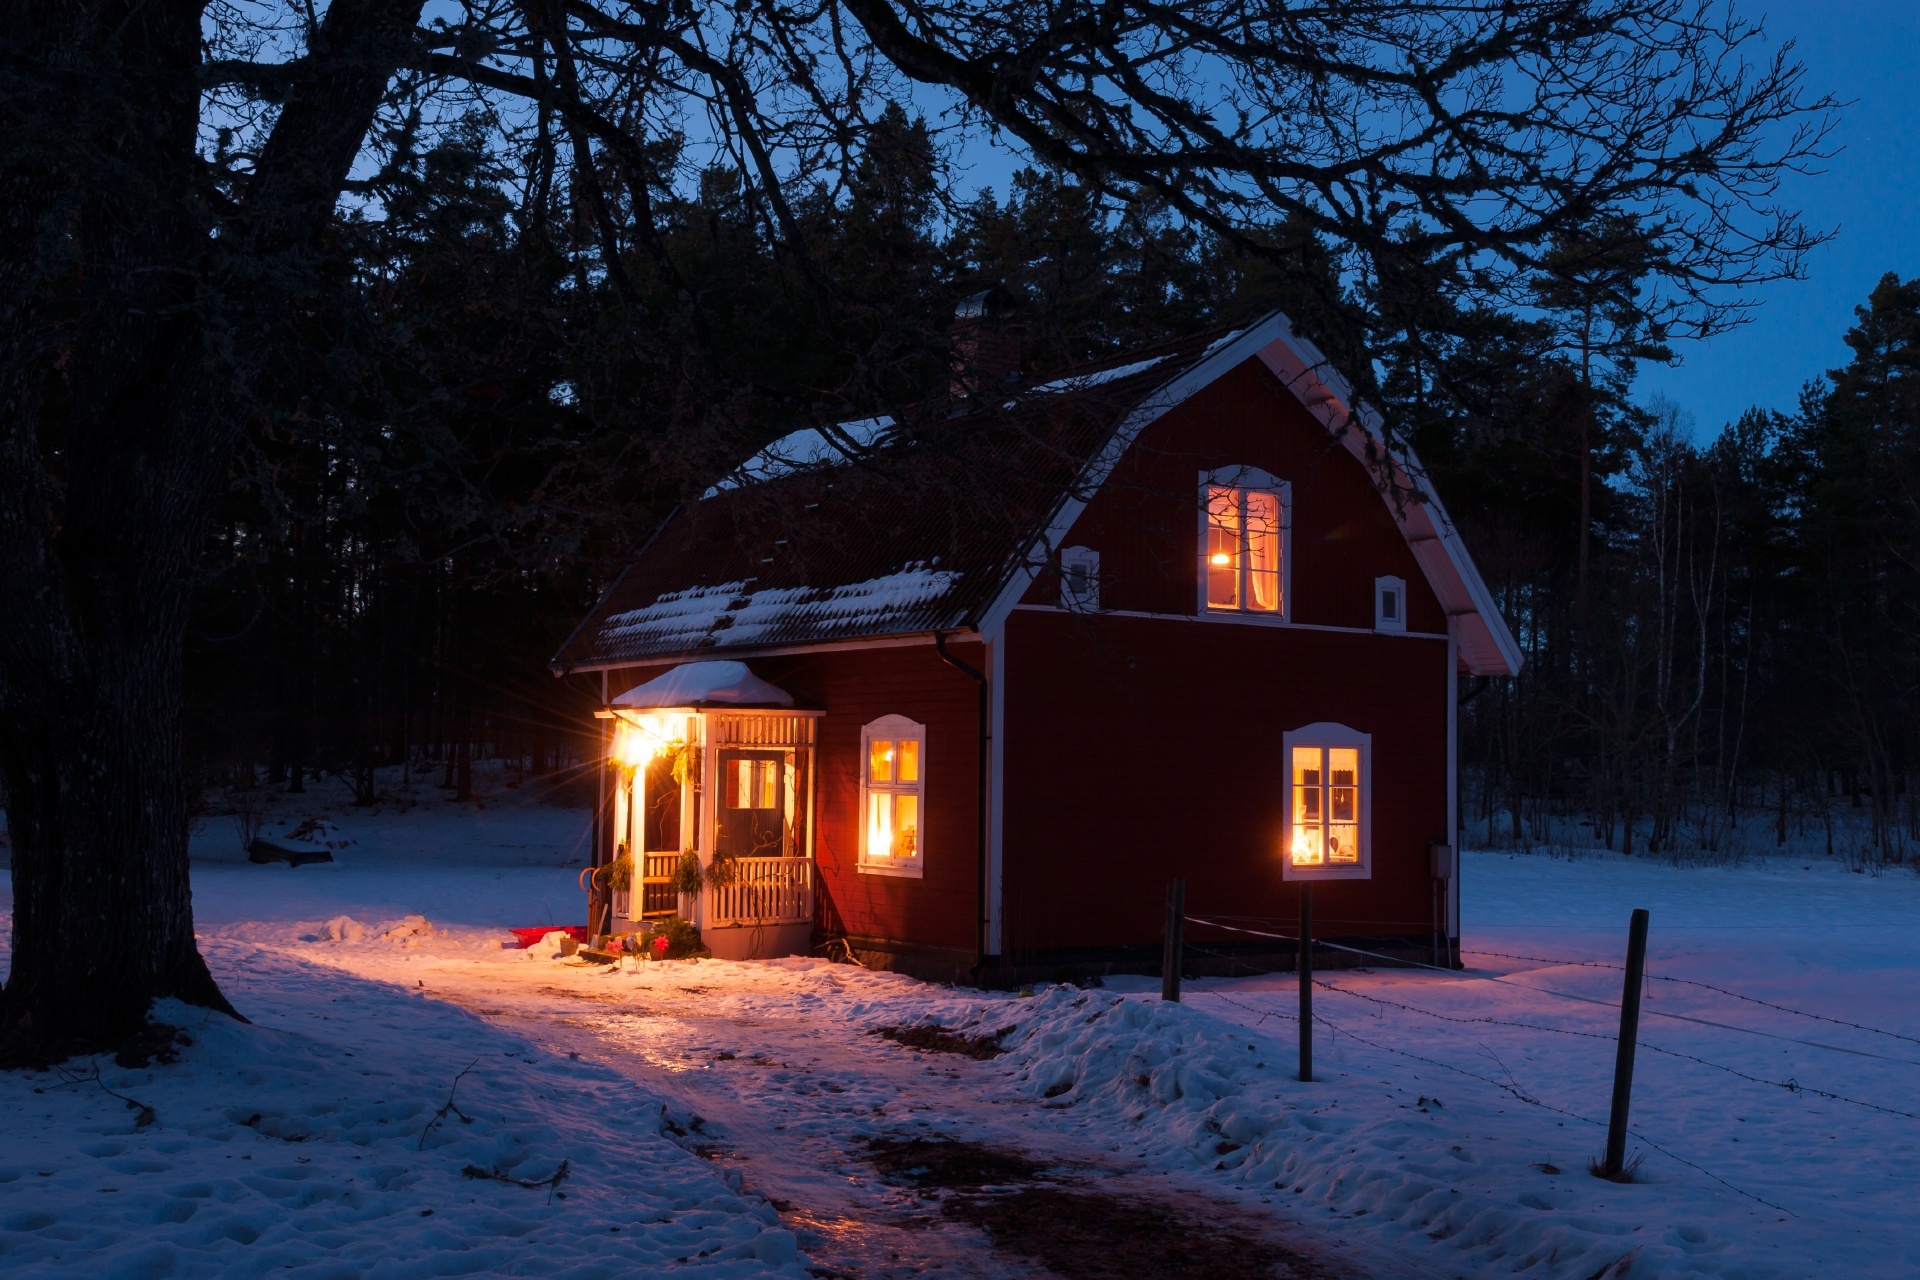 冬の夜の風景 スウェーデンの冬の風景 – 北欧の美しい風景 hokuo-guide.com&#39;s ~北欧の風景~